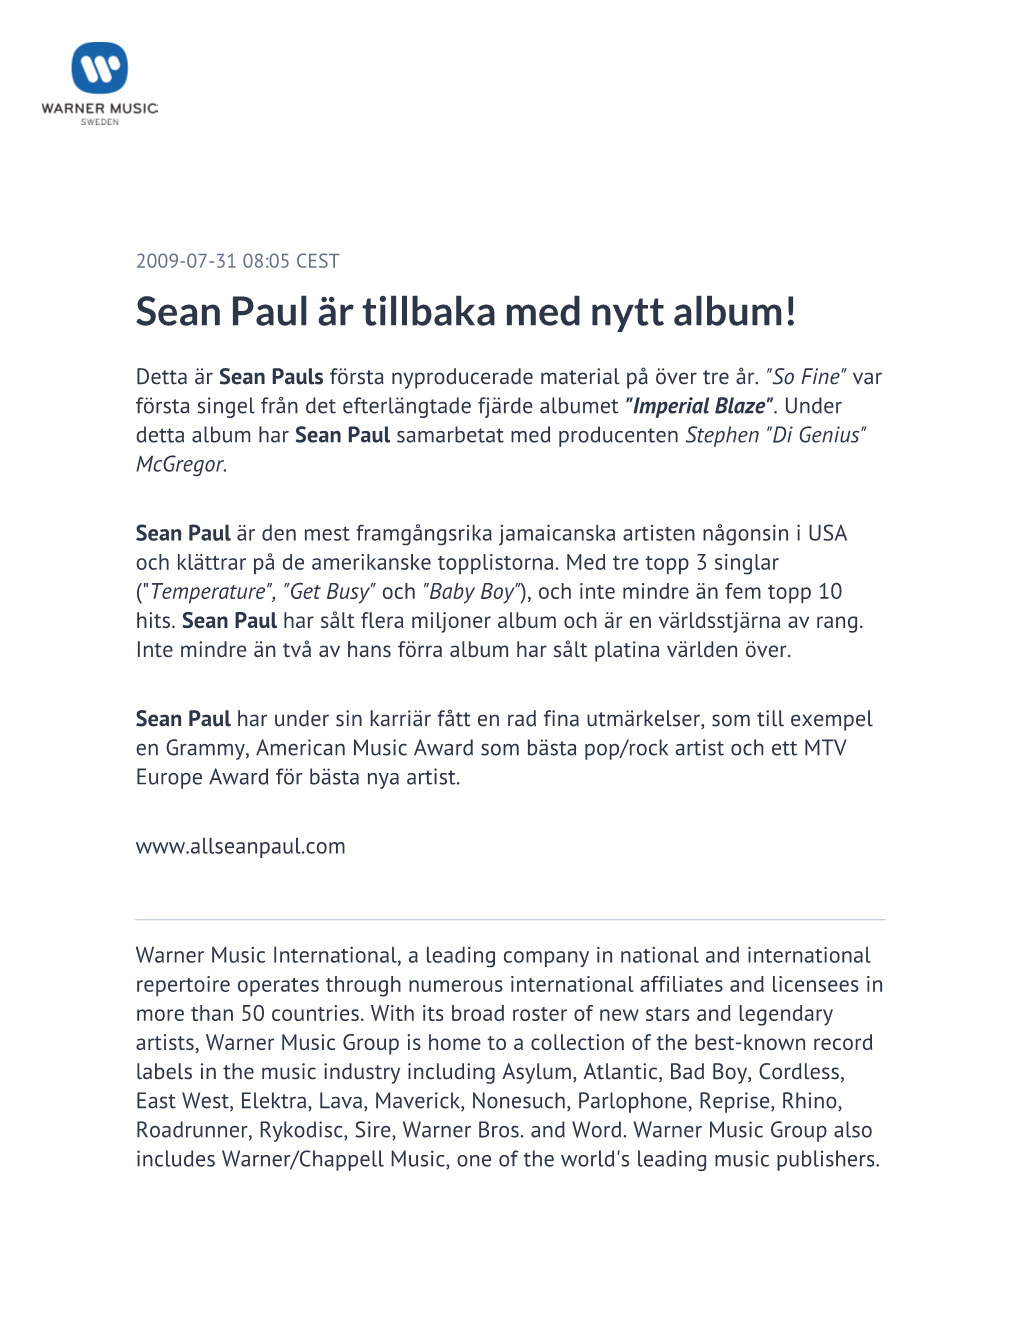 Sean Paul Är Tillbaka Med Nytt Album!